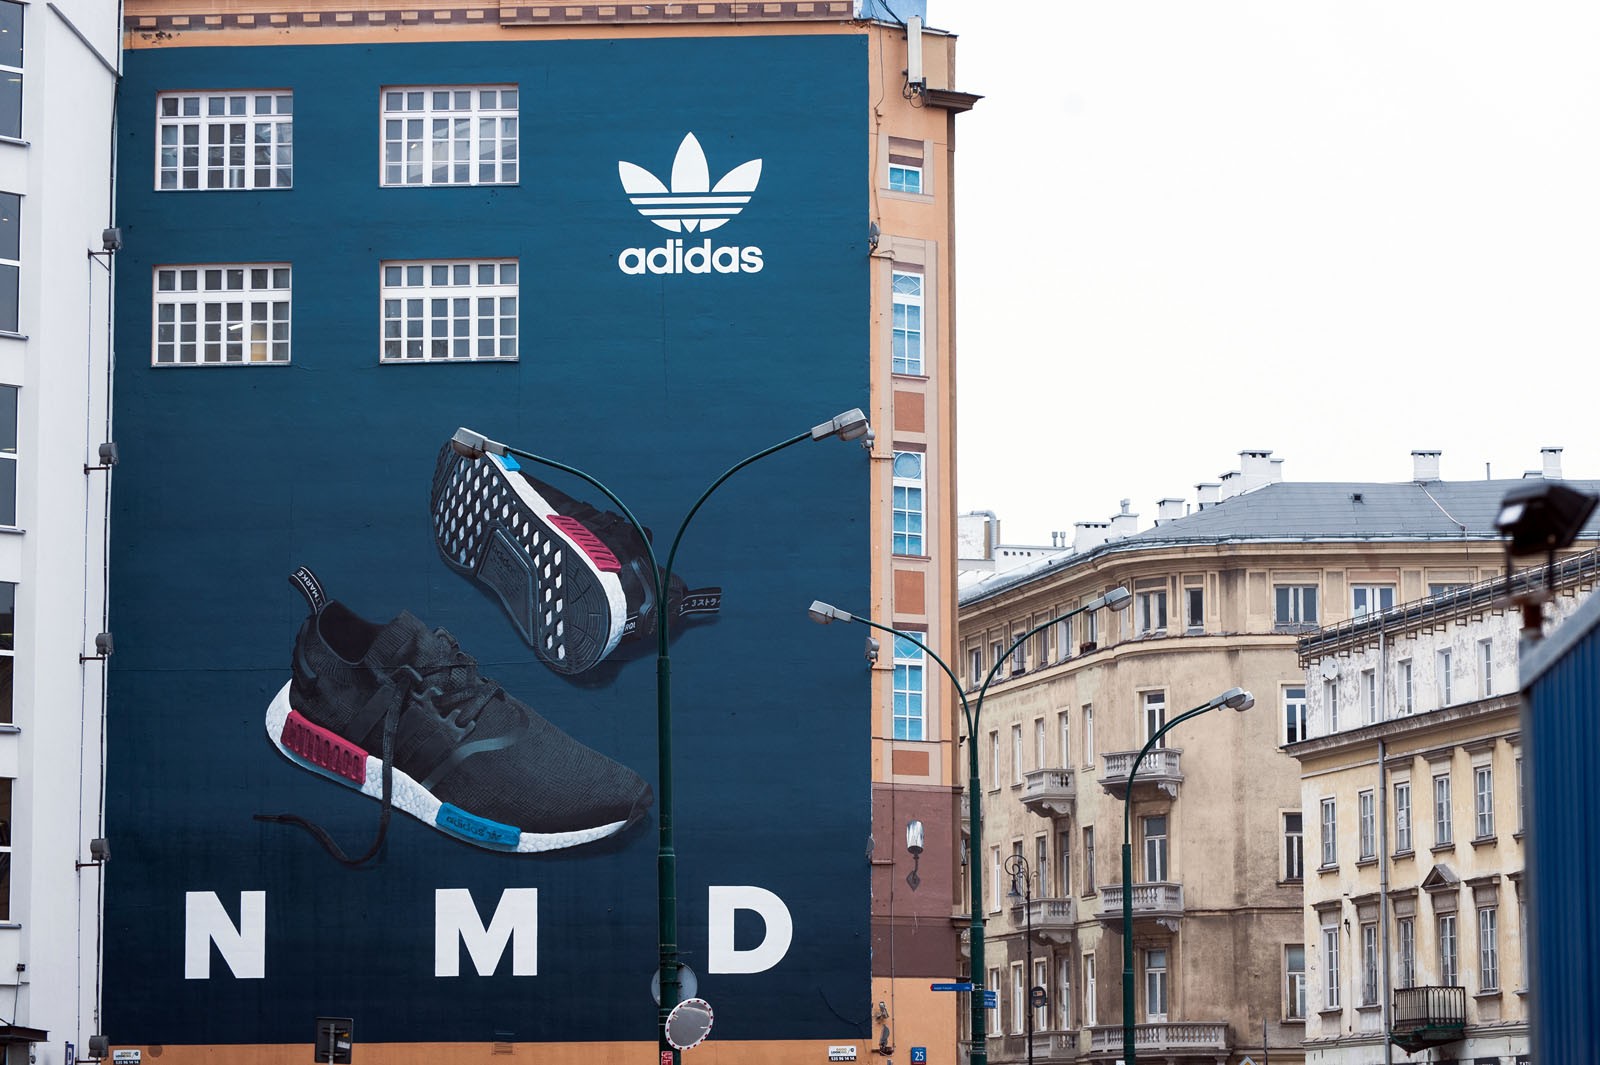 Werbefassade für die Marke Adidas in Warschau, Bracka-Straße vor der Einführung der NMD-Schuhe auf den polnischen Markt | Polnische Premiere der Schuhen NMD Adidas Originals | Portfolio